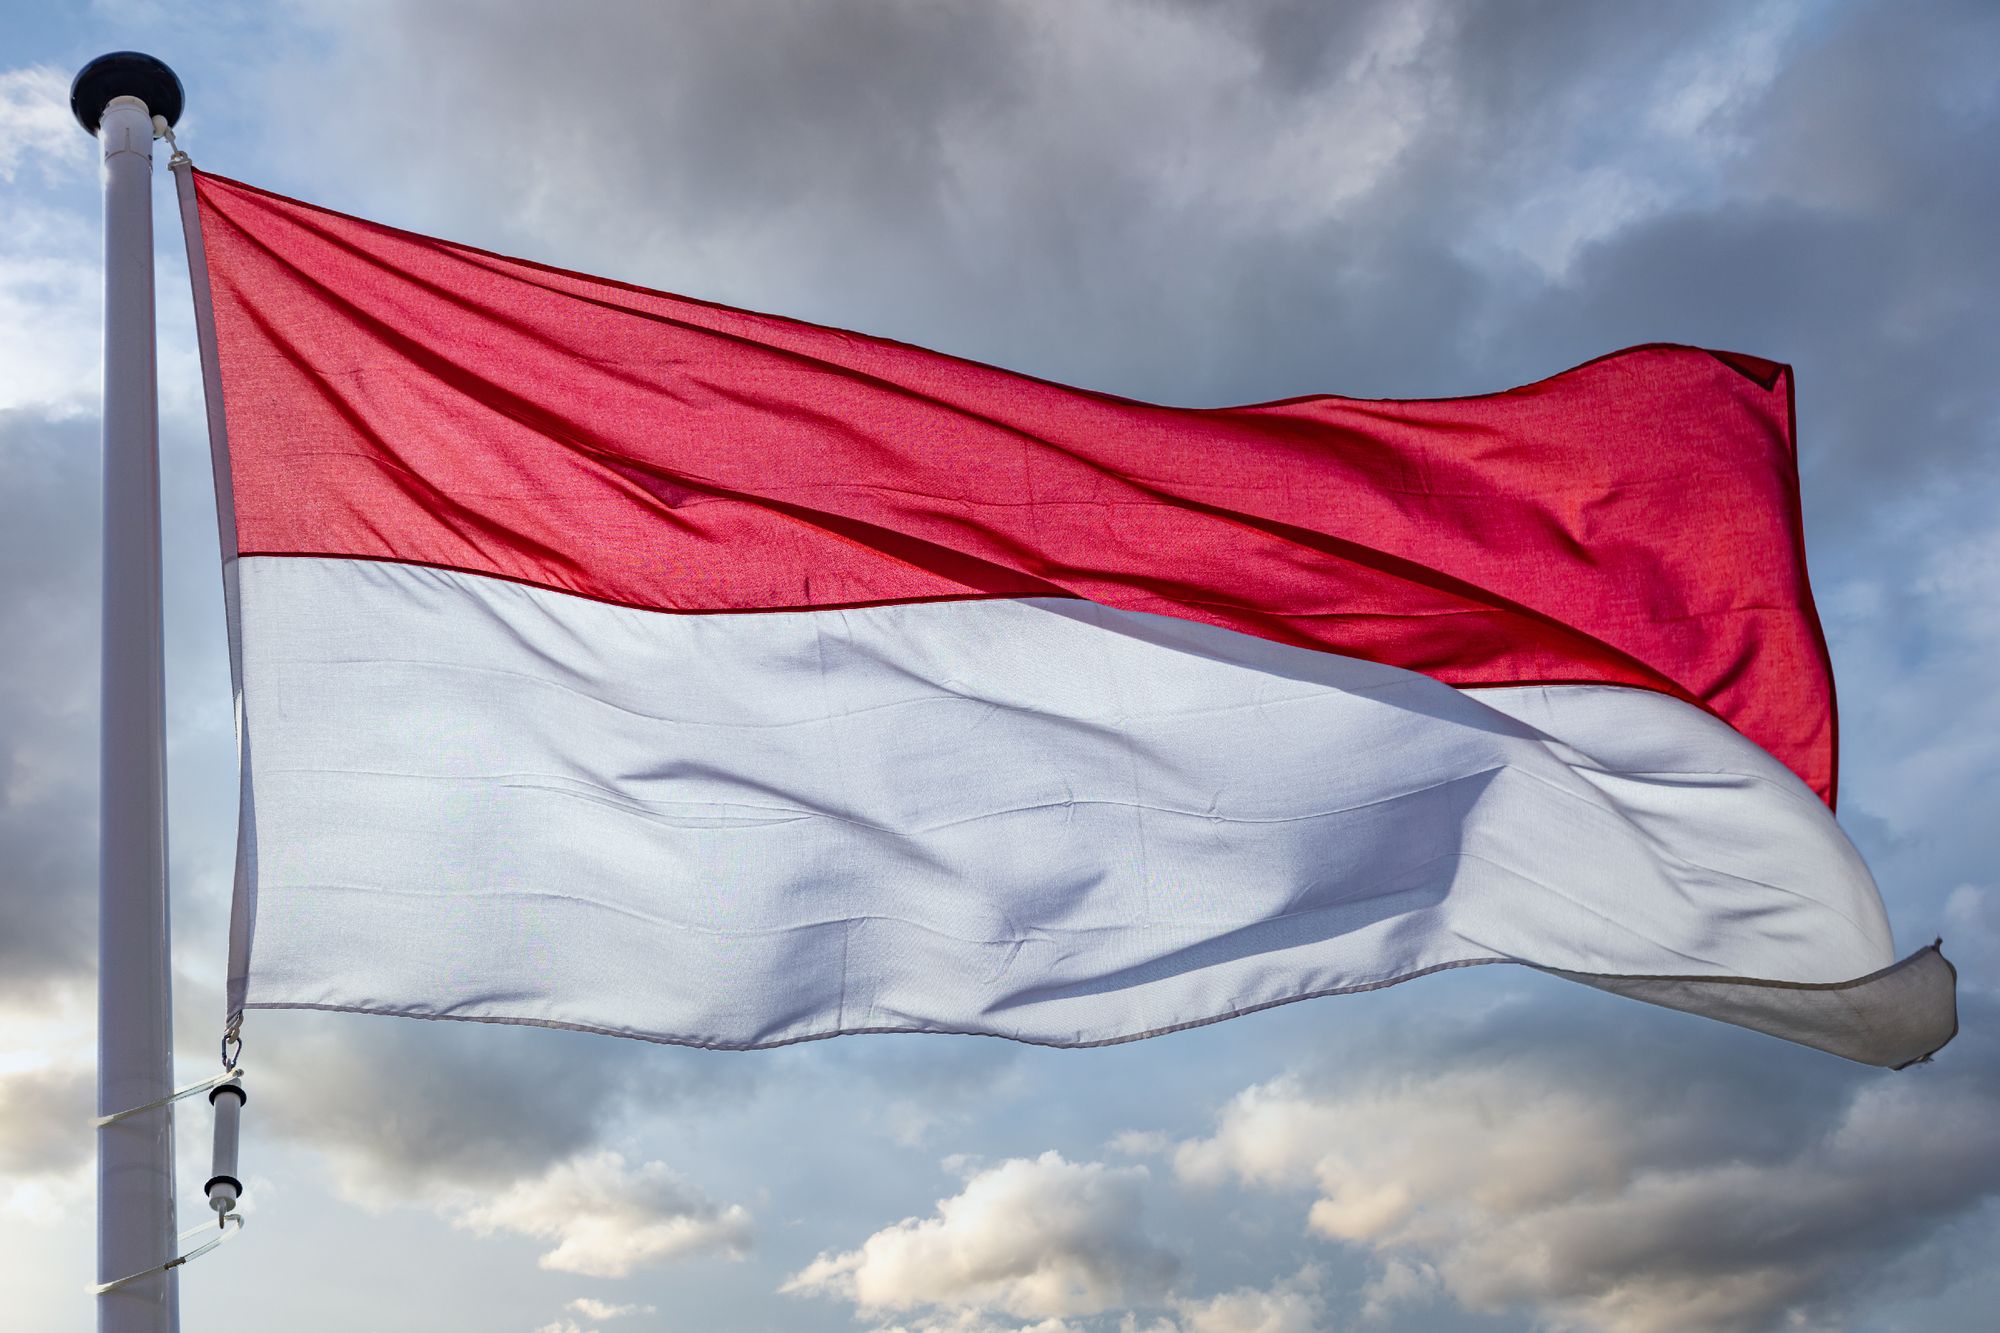 7 Takeaways: Fintech Lending Industry In Indonesia